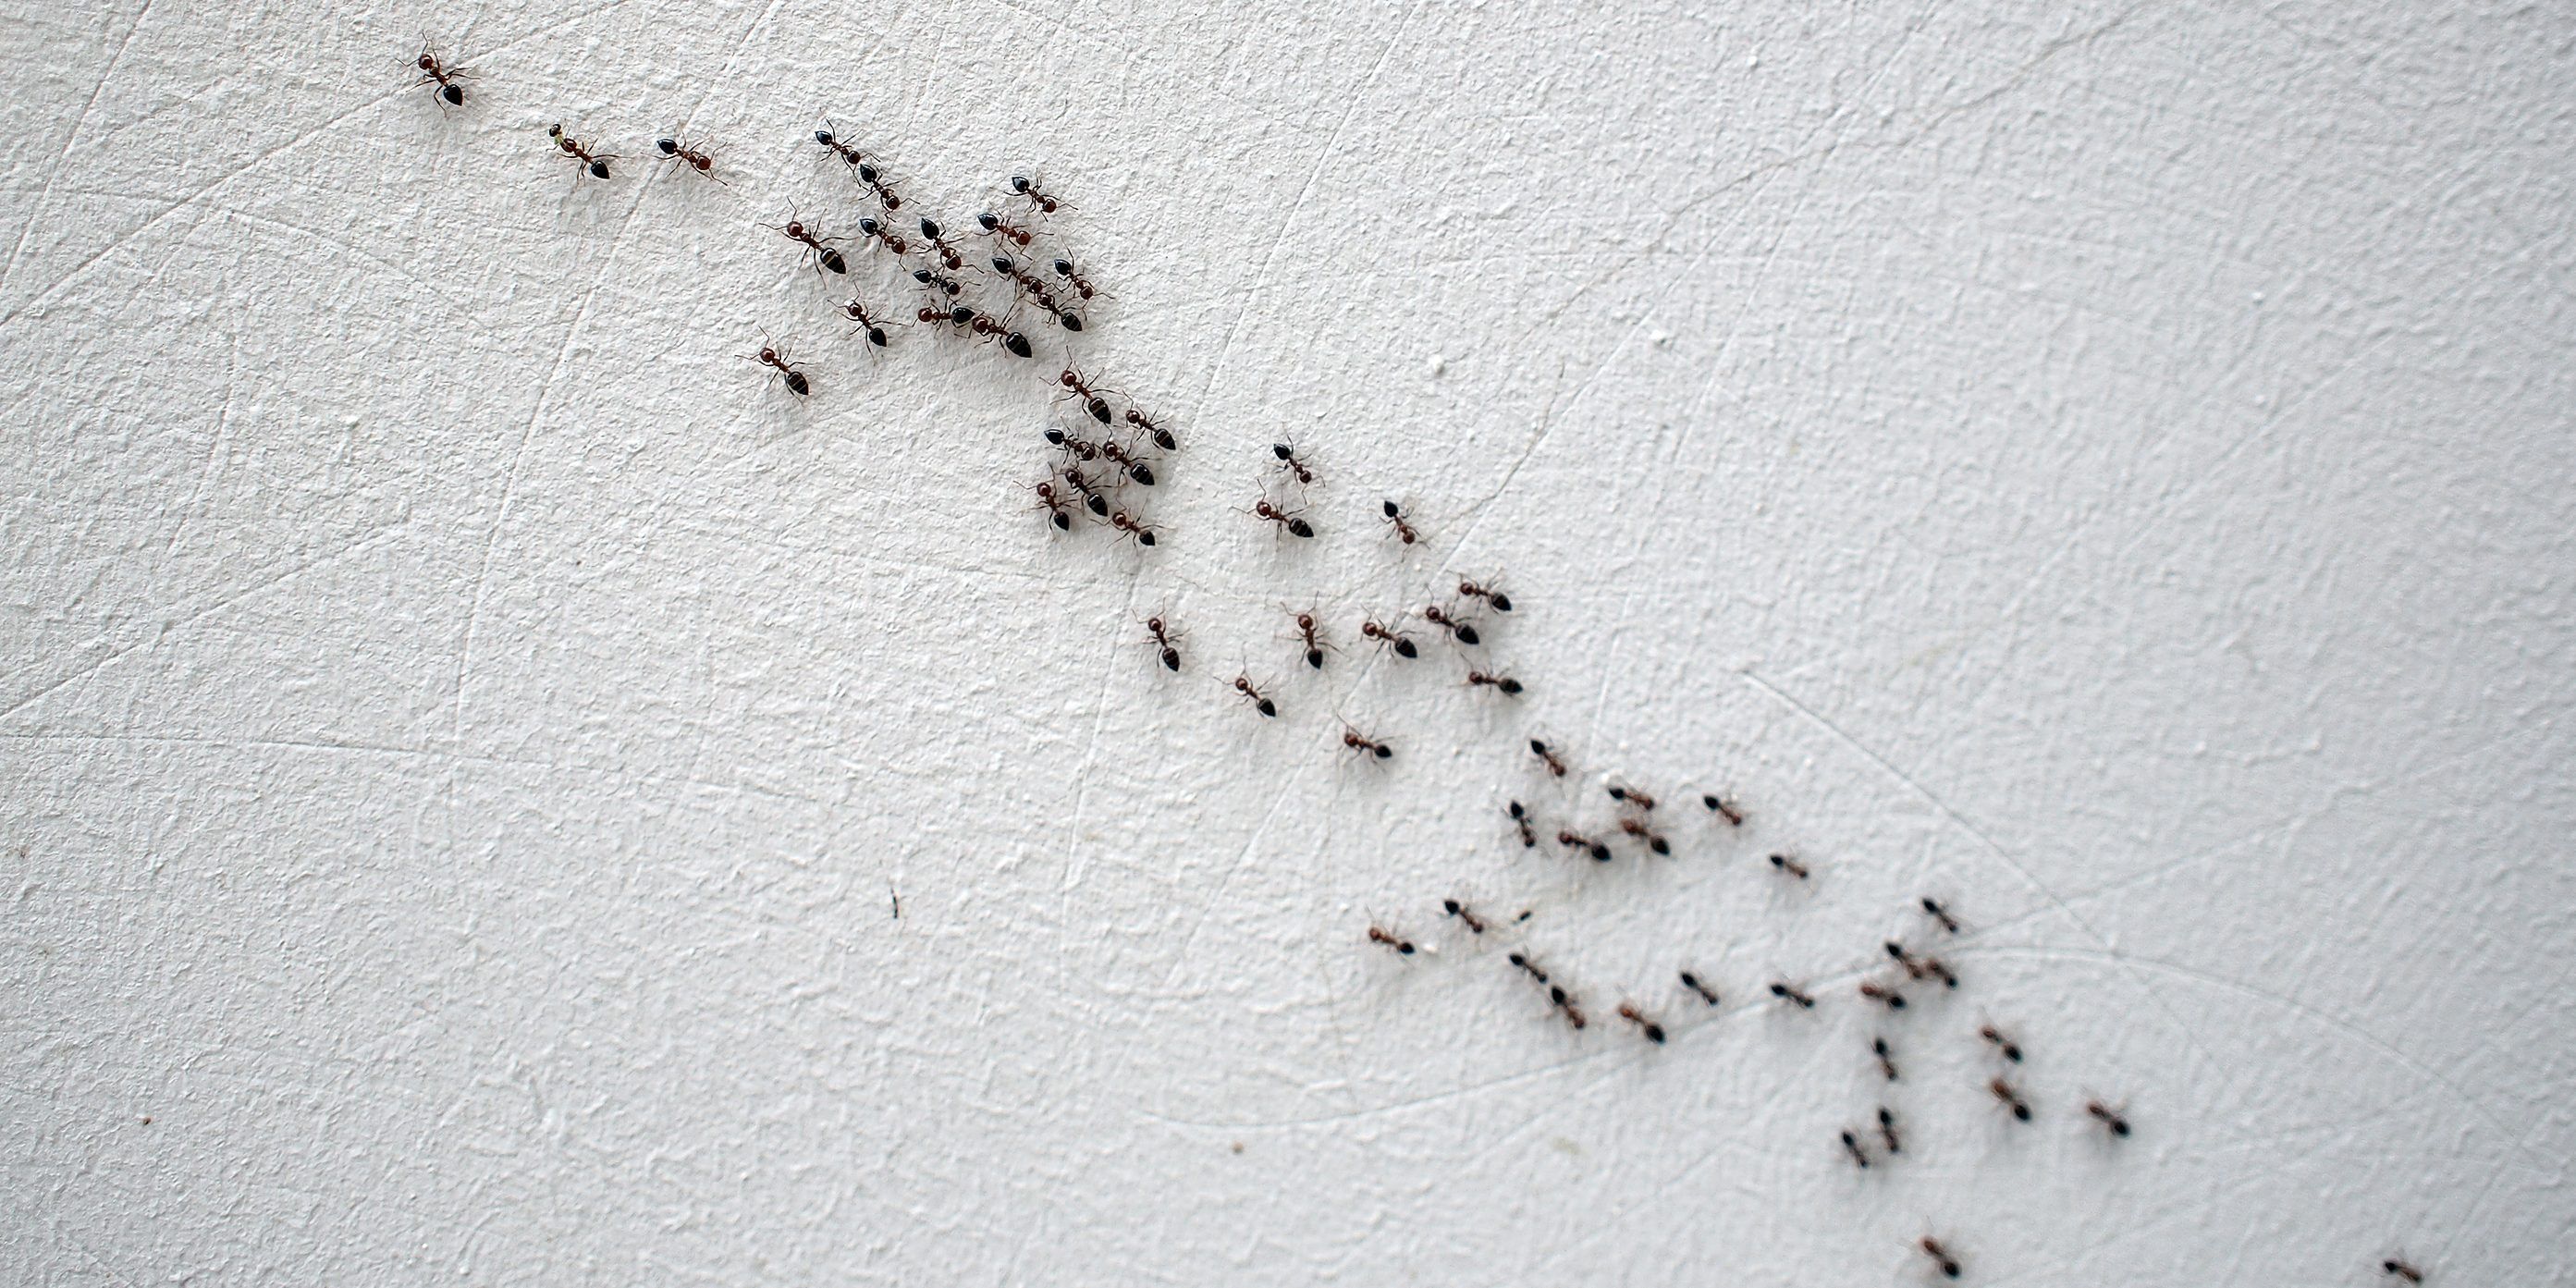 ant infestation in living room